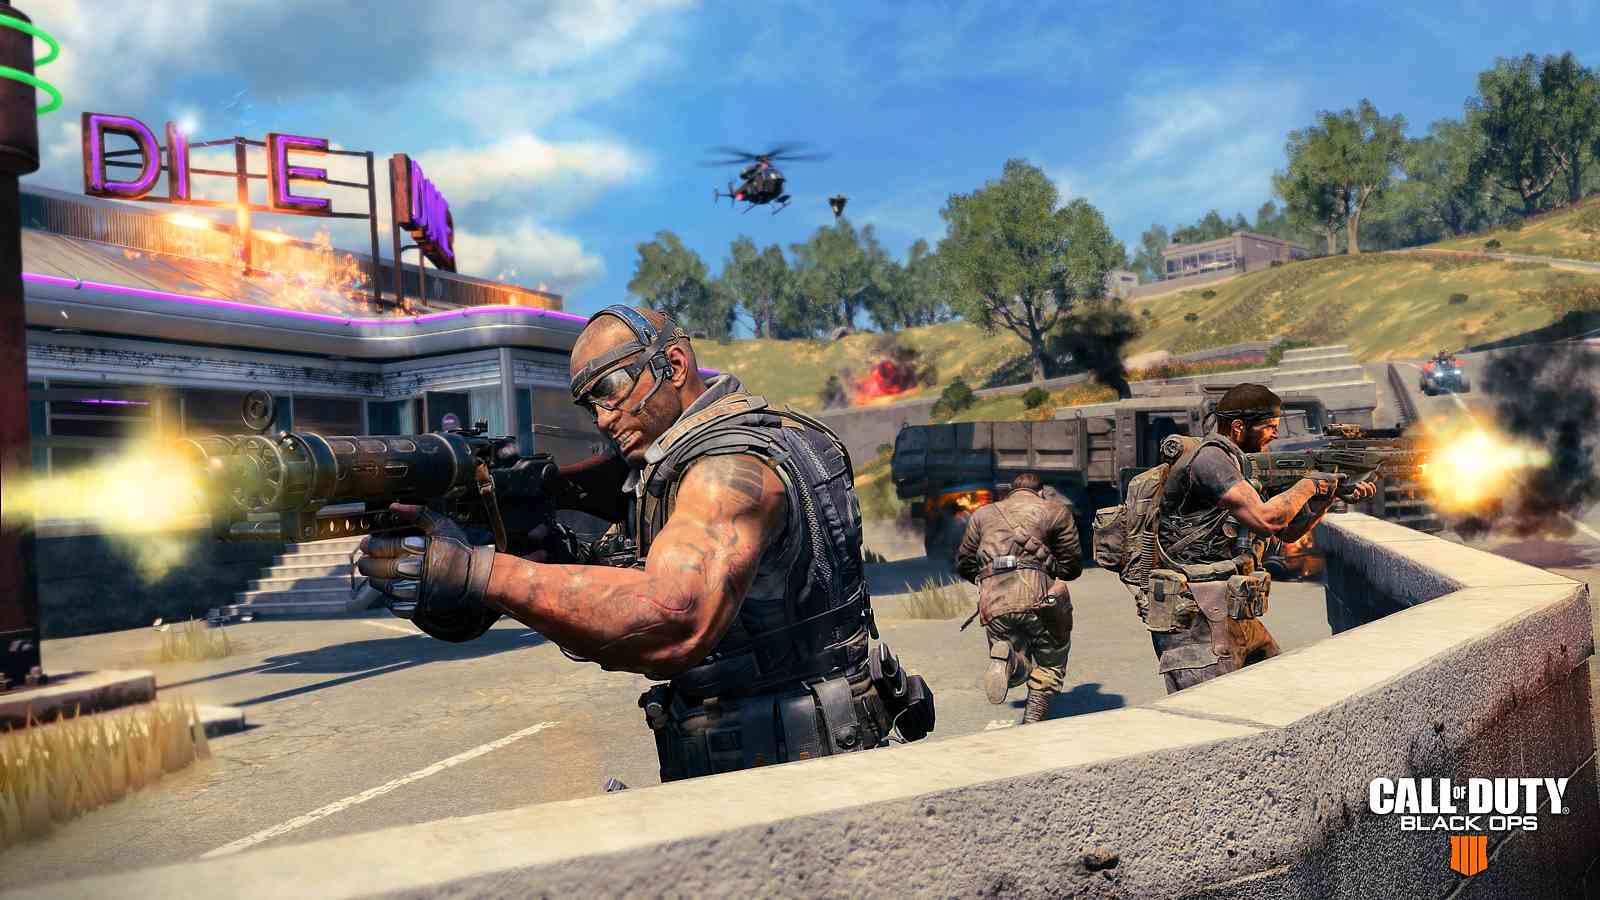 Dodatečný obsah pro Call of Duty: Black Ops 4 přiblížen